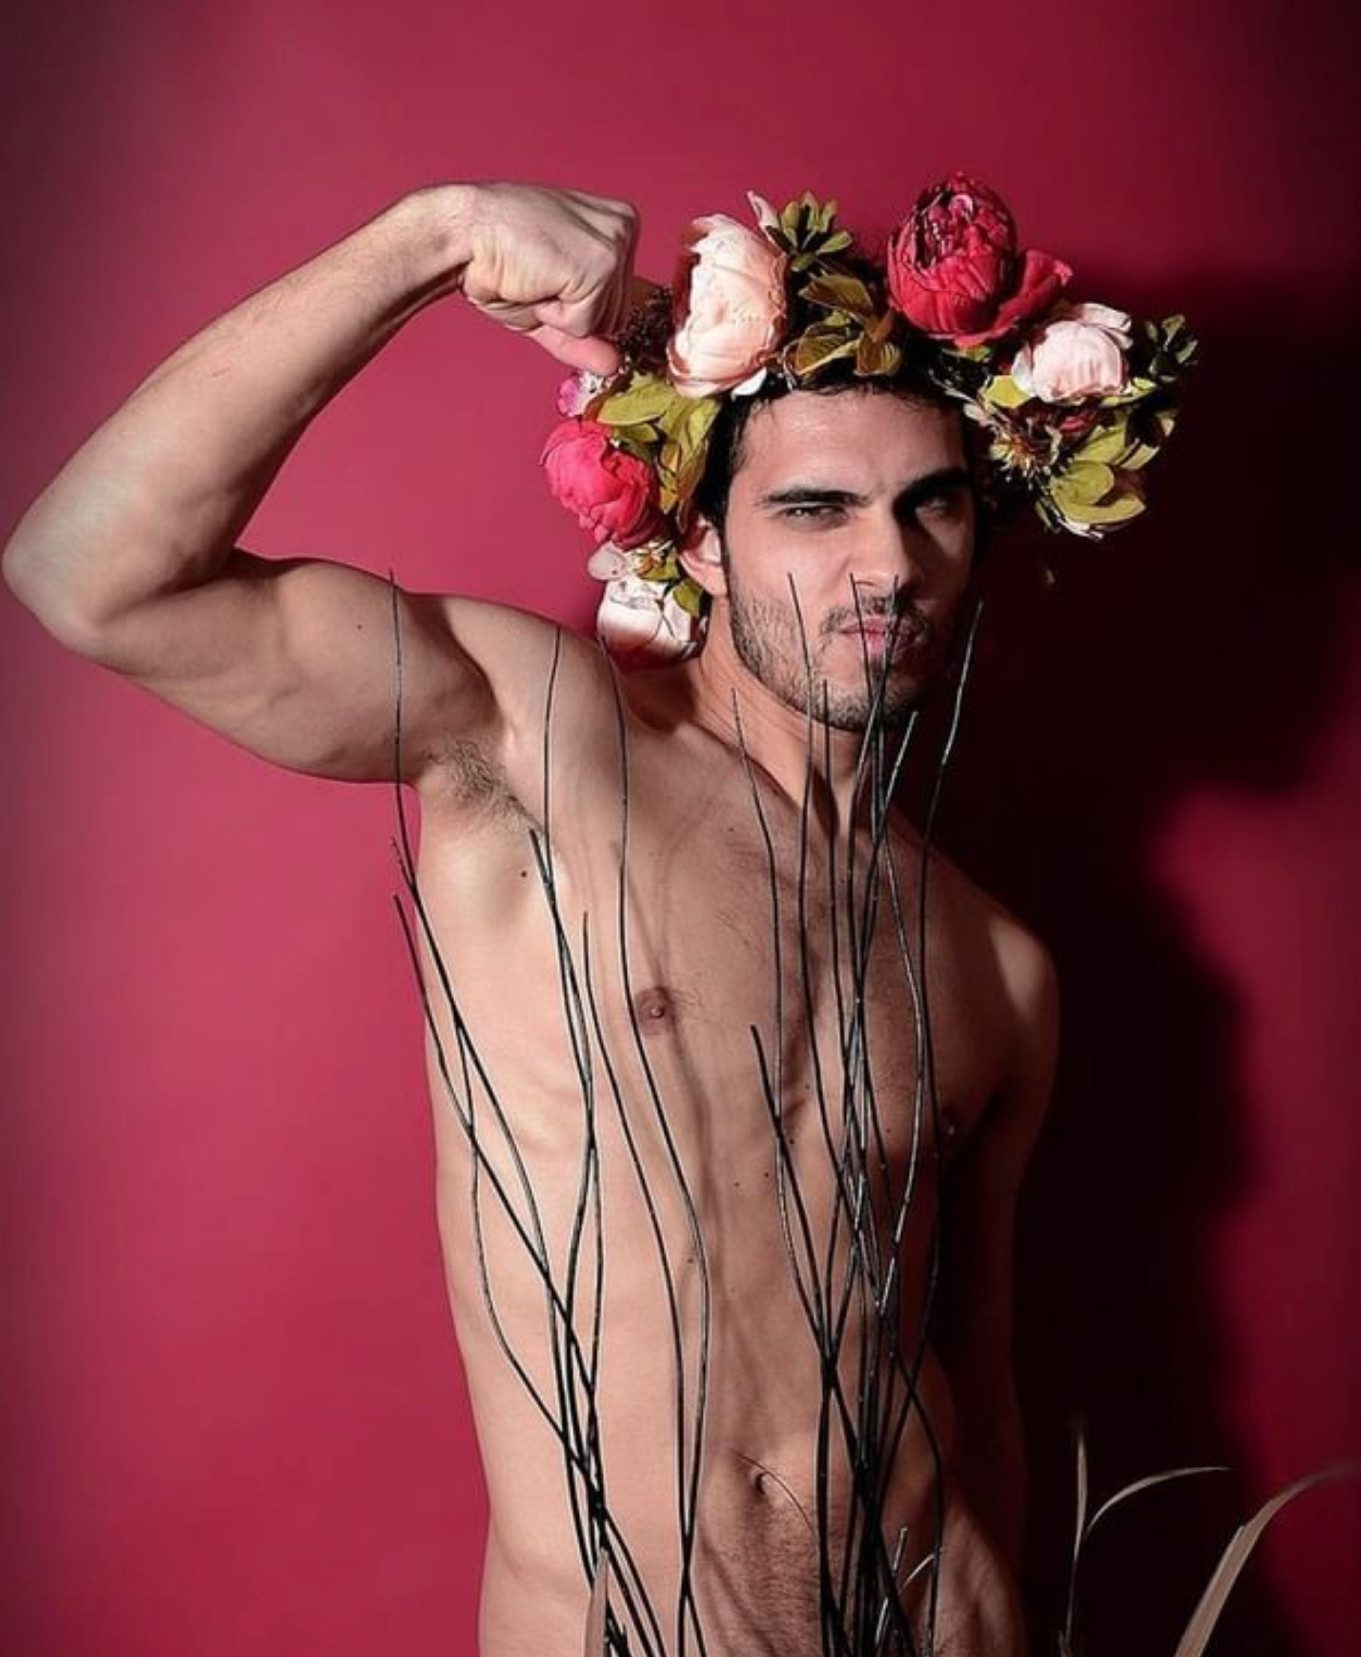 Giuseppe Claudio Insalaco, gay Italian actor, model, dancer